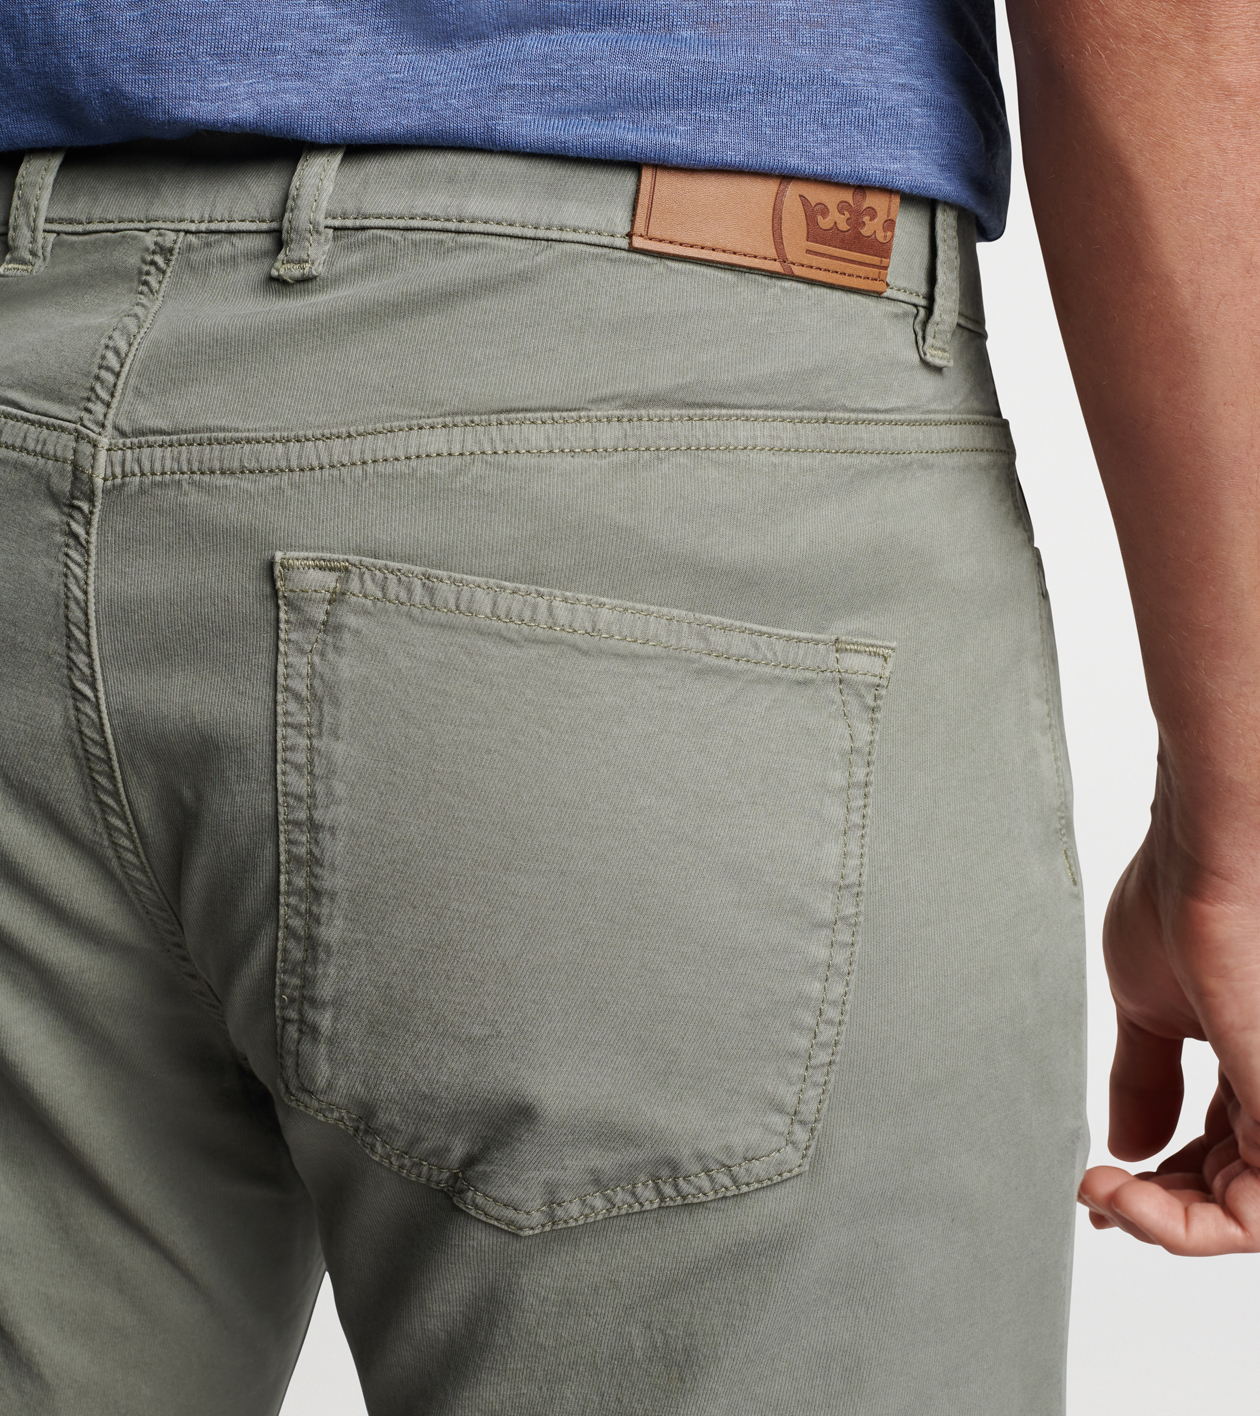 Wayfare Five-Pocket Pant, Men's Pants